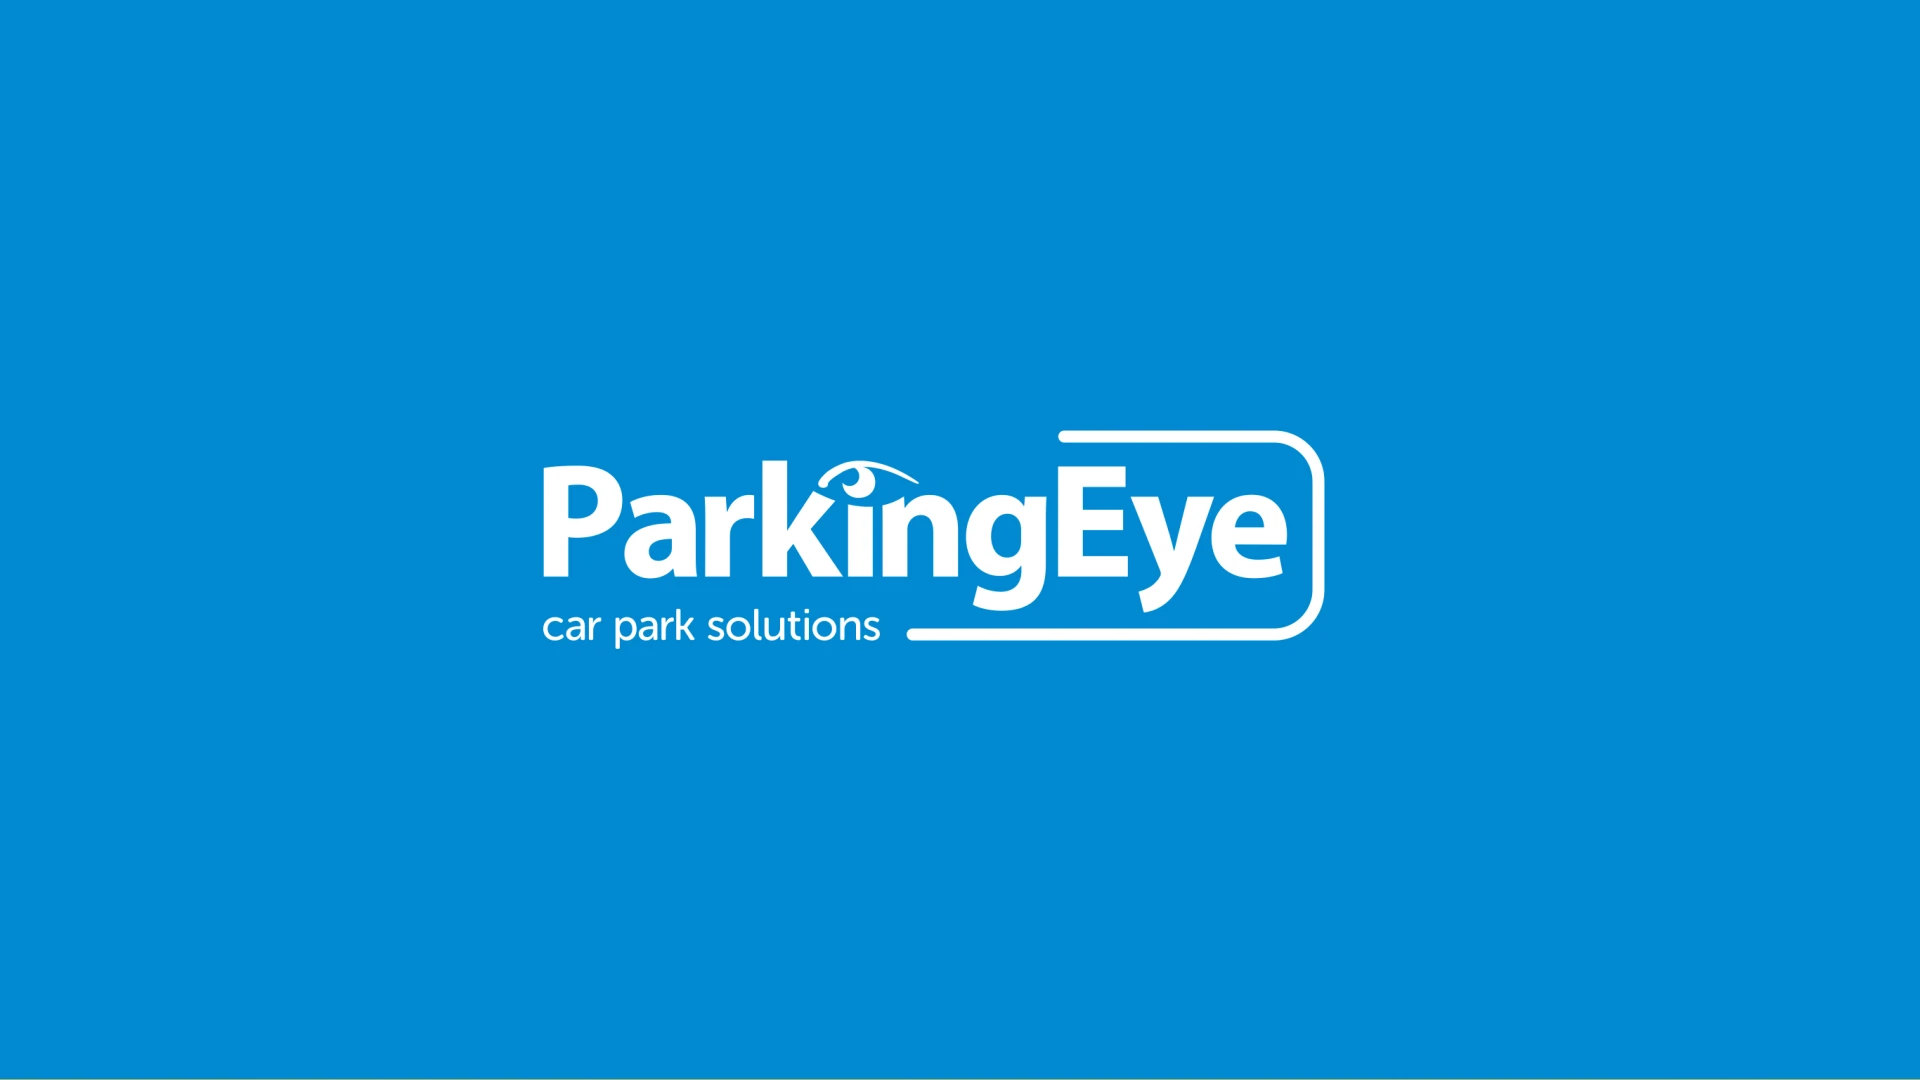 Parking Eye Brand Identity, 